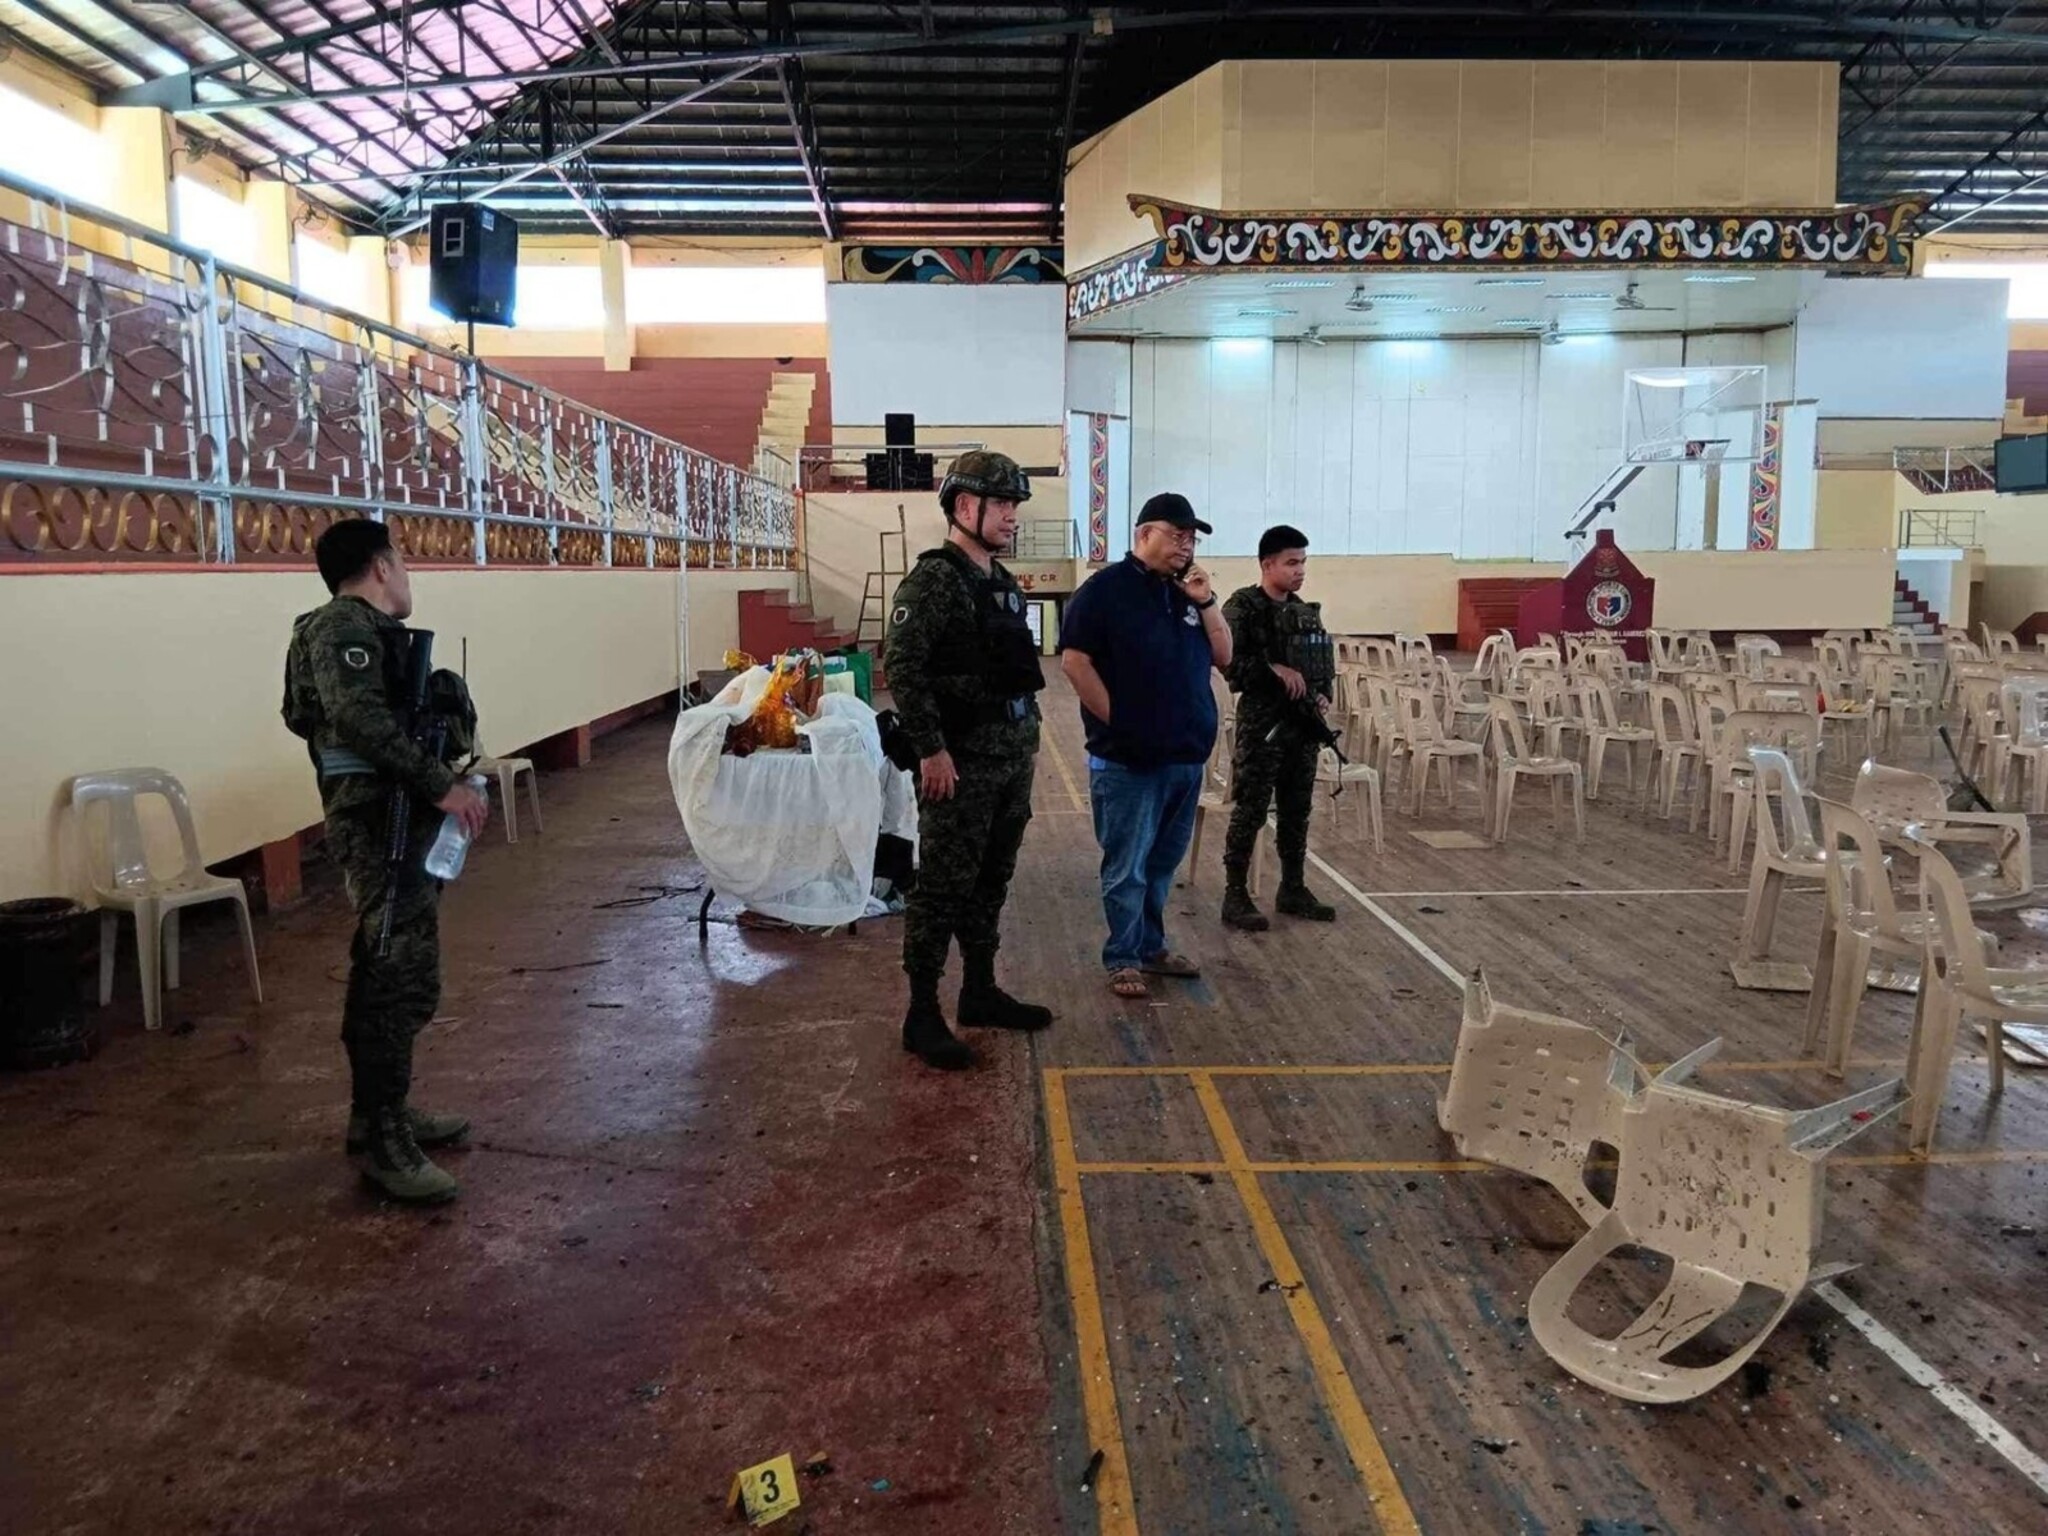 تنظيم "داعش" يعلن مسؤوليته عن تفجير القداس الكاثوليكي جنوب الفلبين